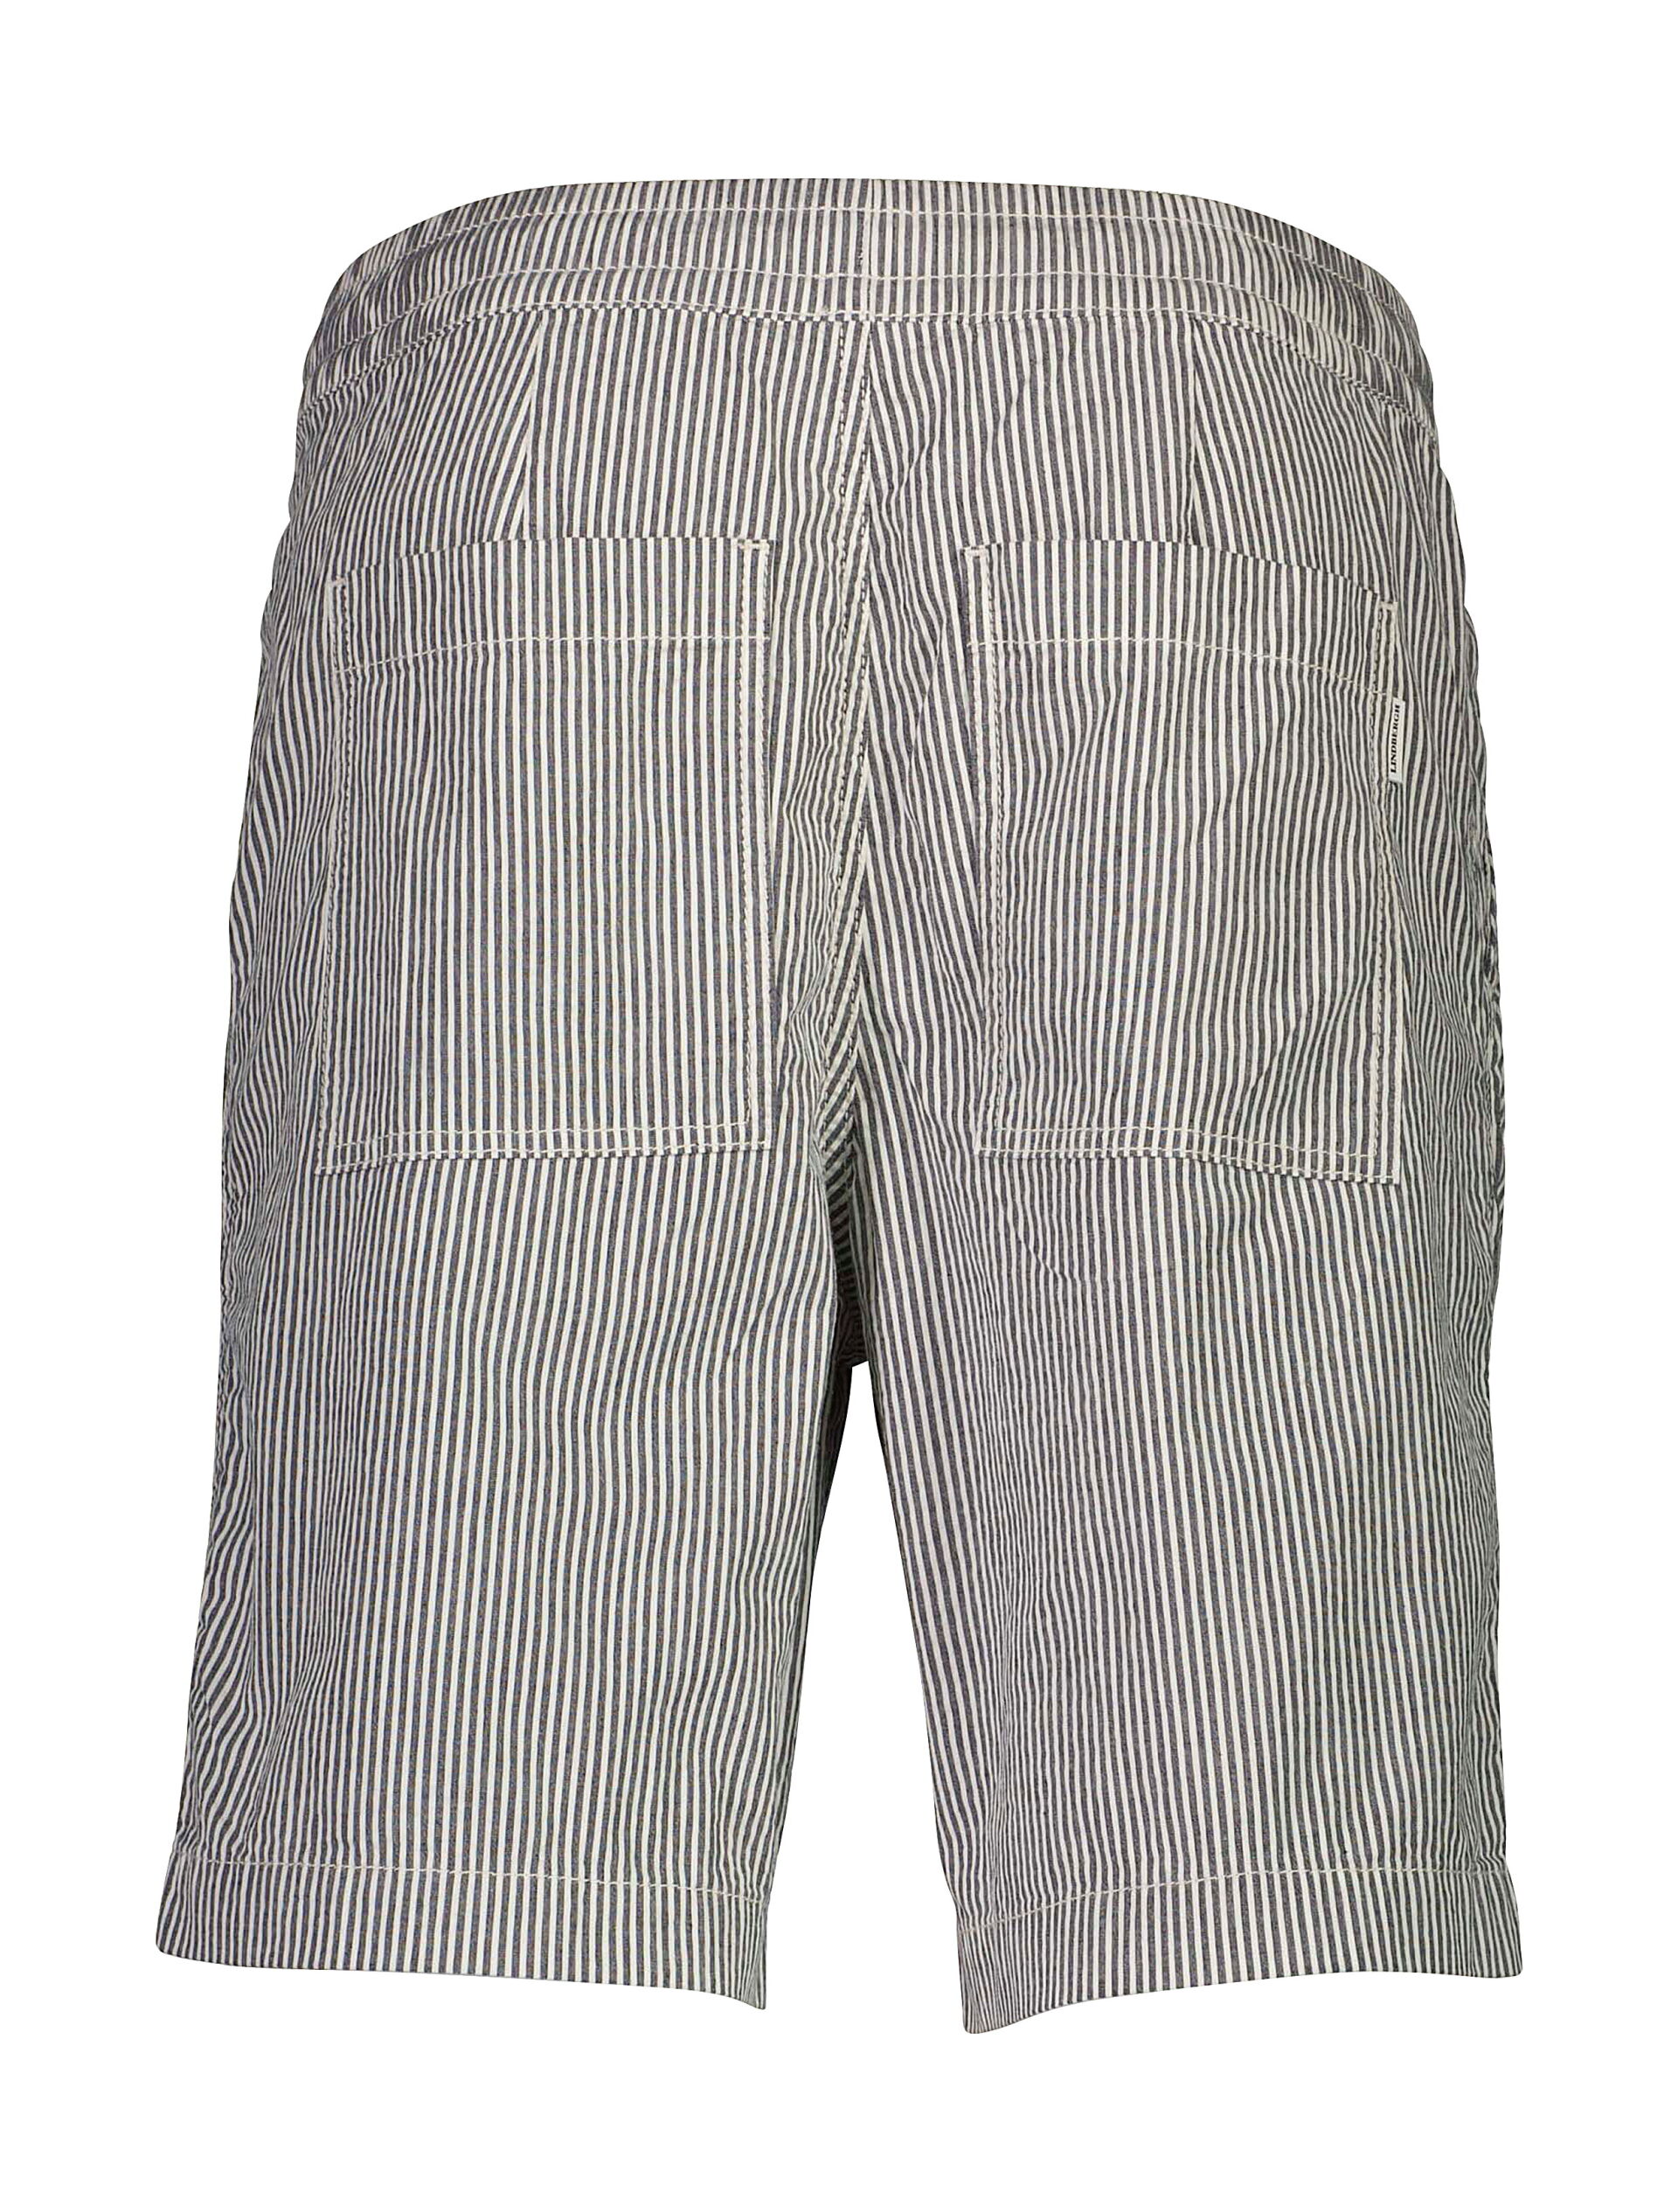 Lindbergh  Casual shorts 30-503044